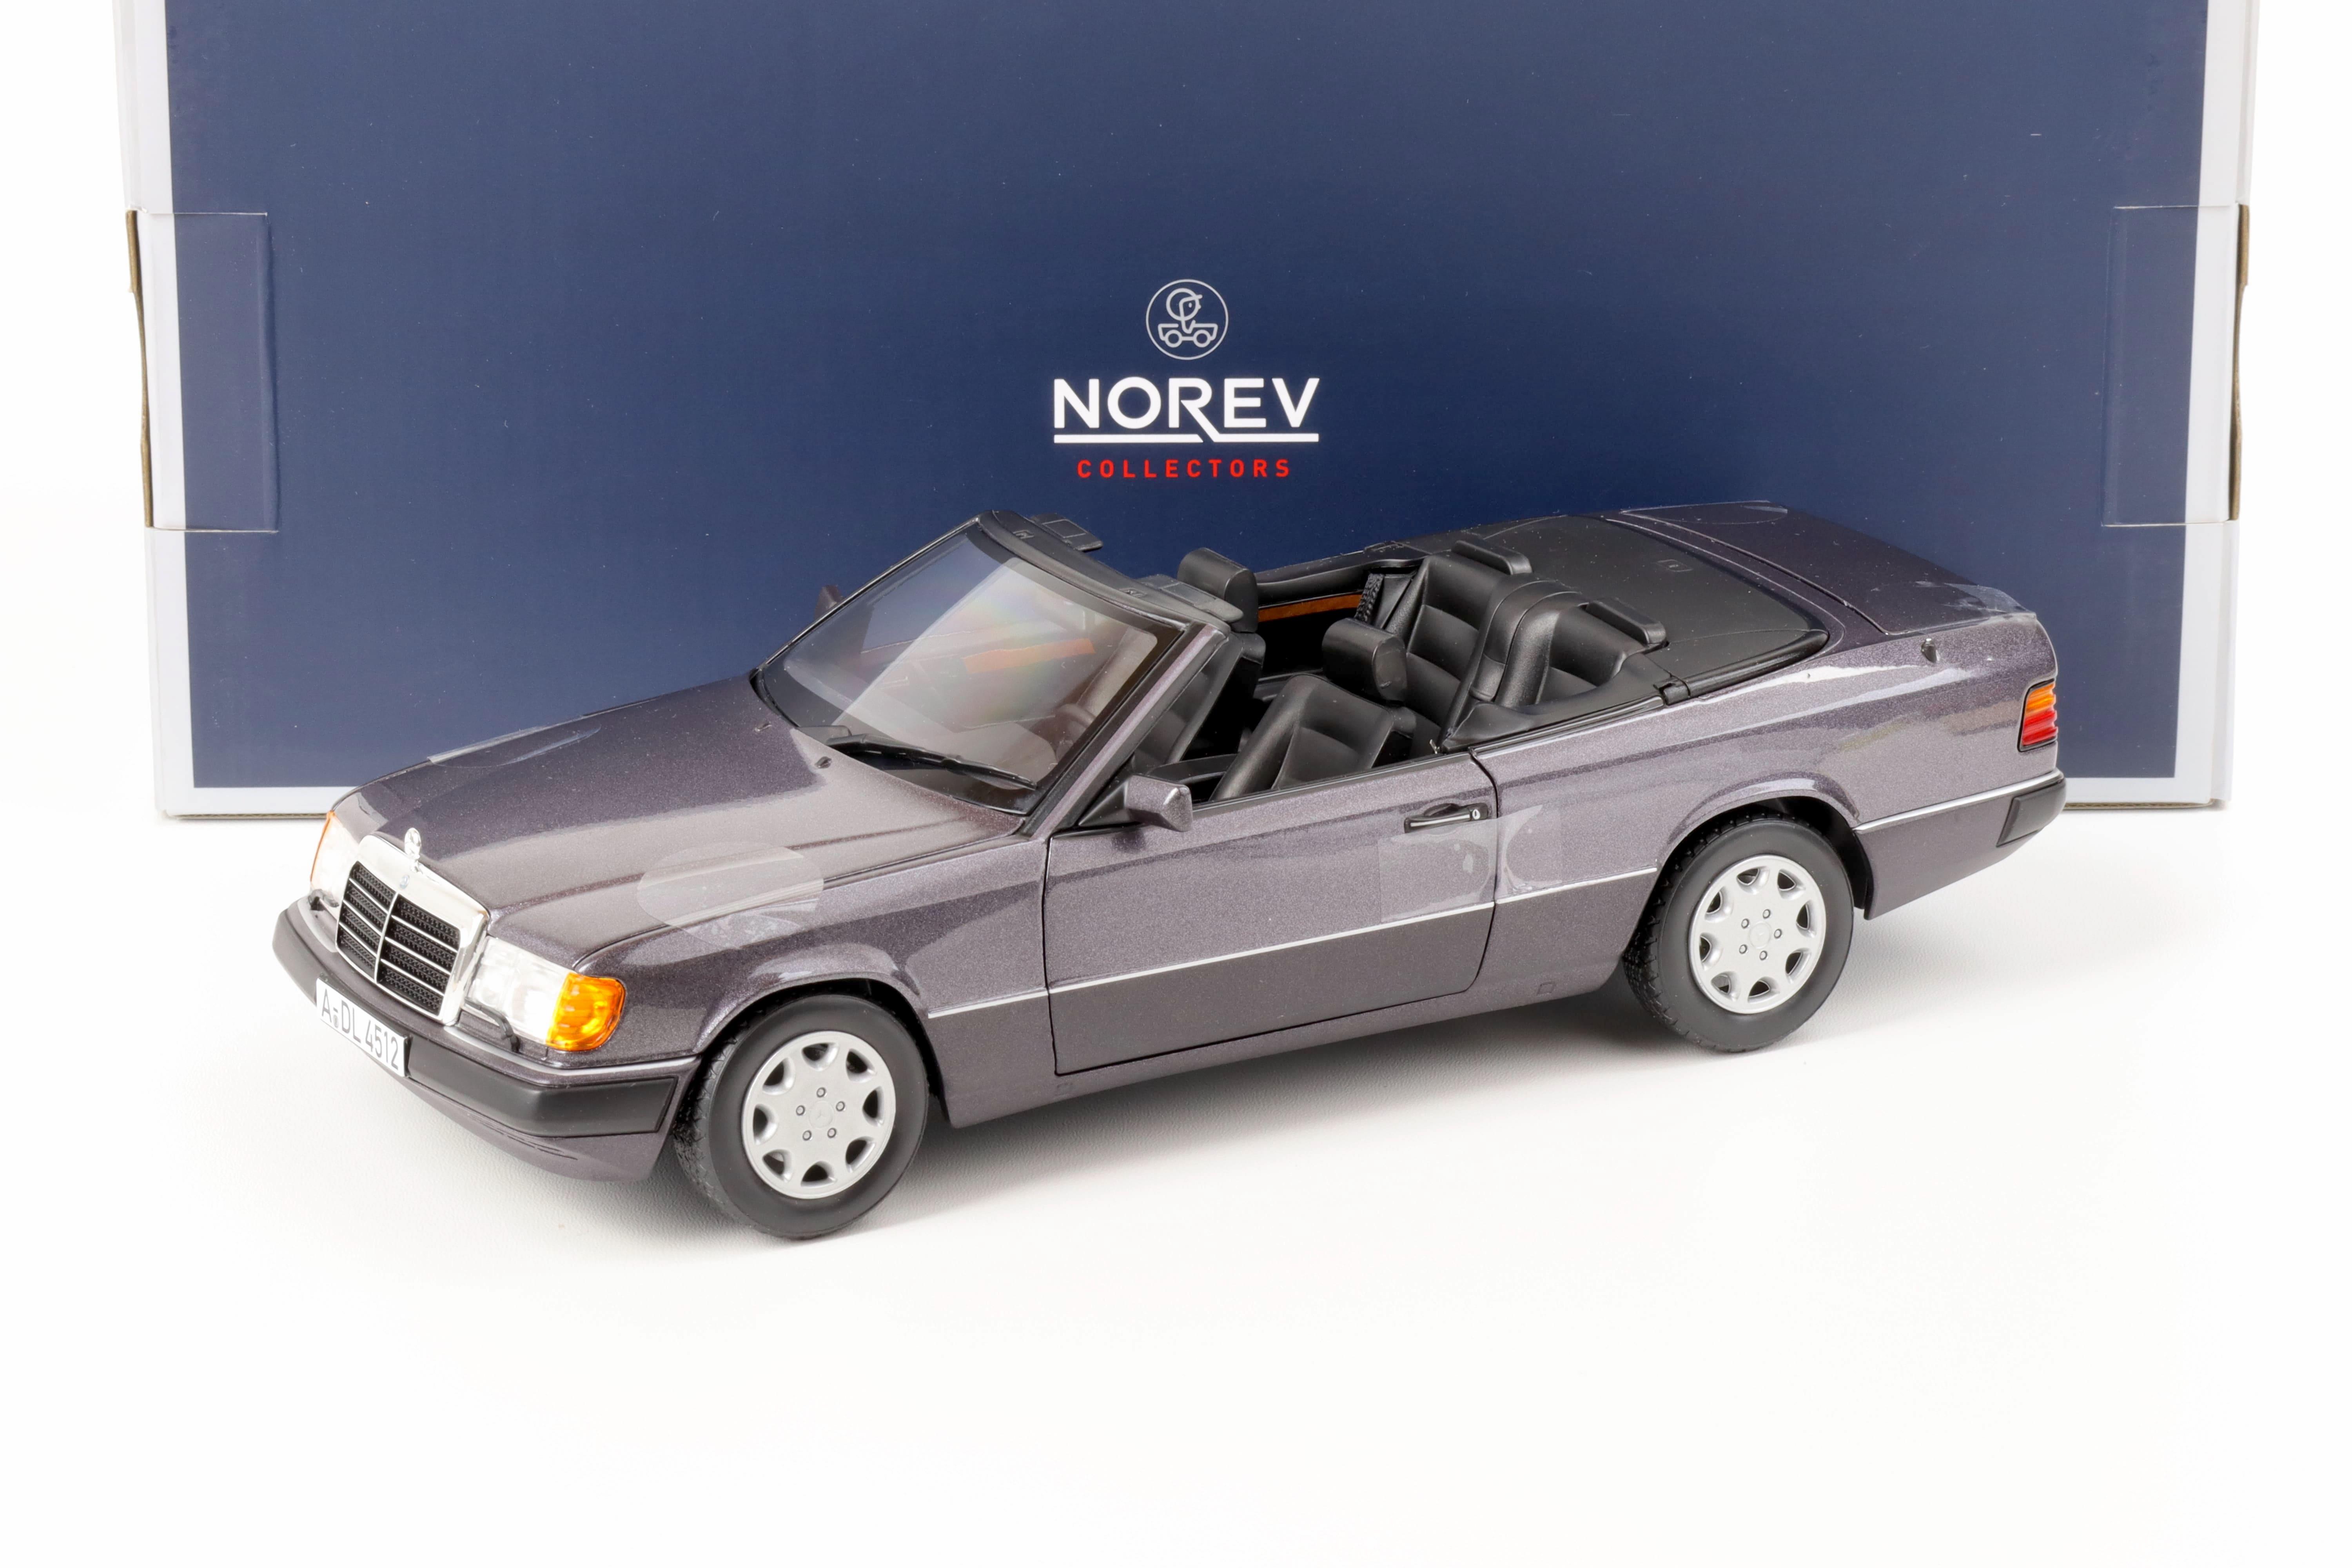 1:18 Norev Mercedes 300 CE-24 A124 Convertible bornit metallic 1990 